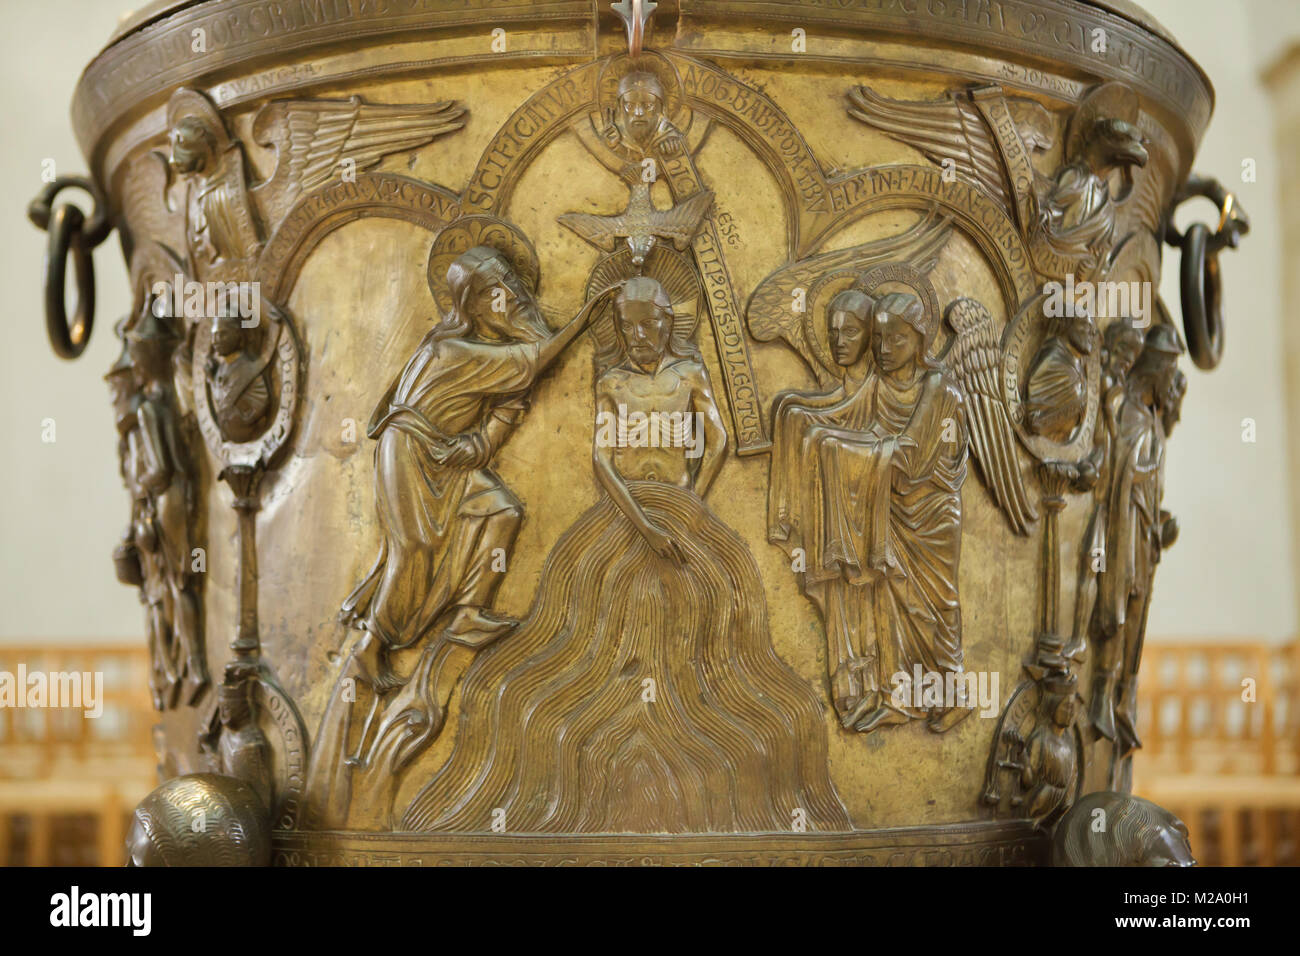 Il Battesimo di Gesù. Rilievo romanico sul bronzo fonte battesimale (Bronzetaufe) dal XI secolo nella cattedrale di Hildesheim (Hildesheimer Dom) a Hildesheim in Bassa Sassonia, Germania. Foto Stock